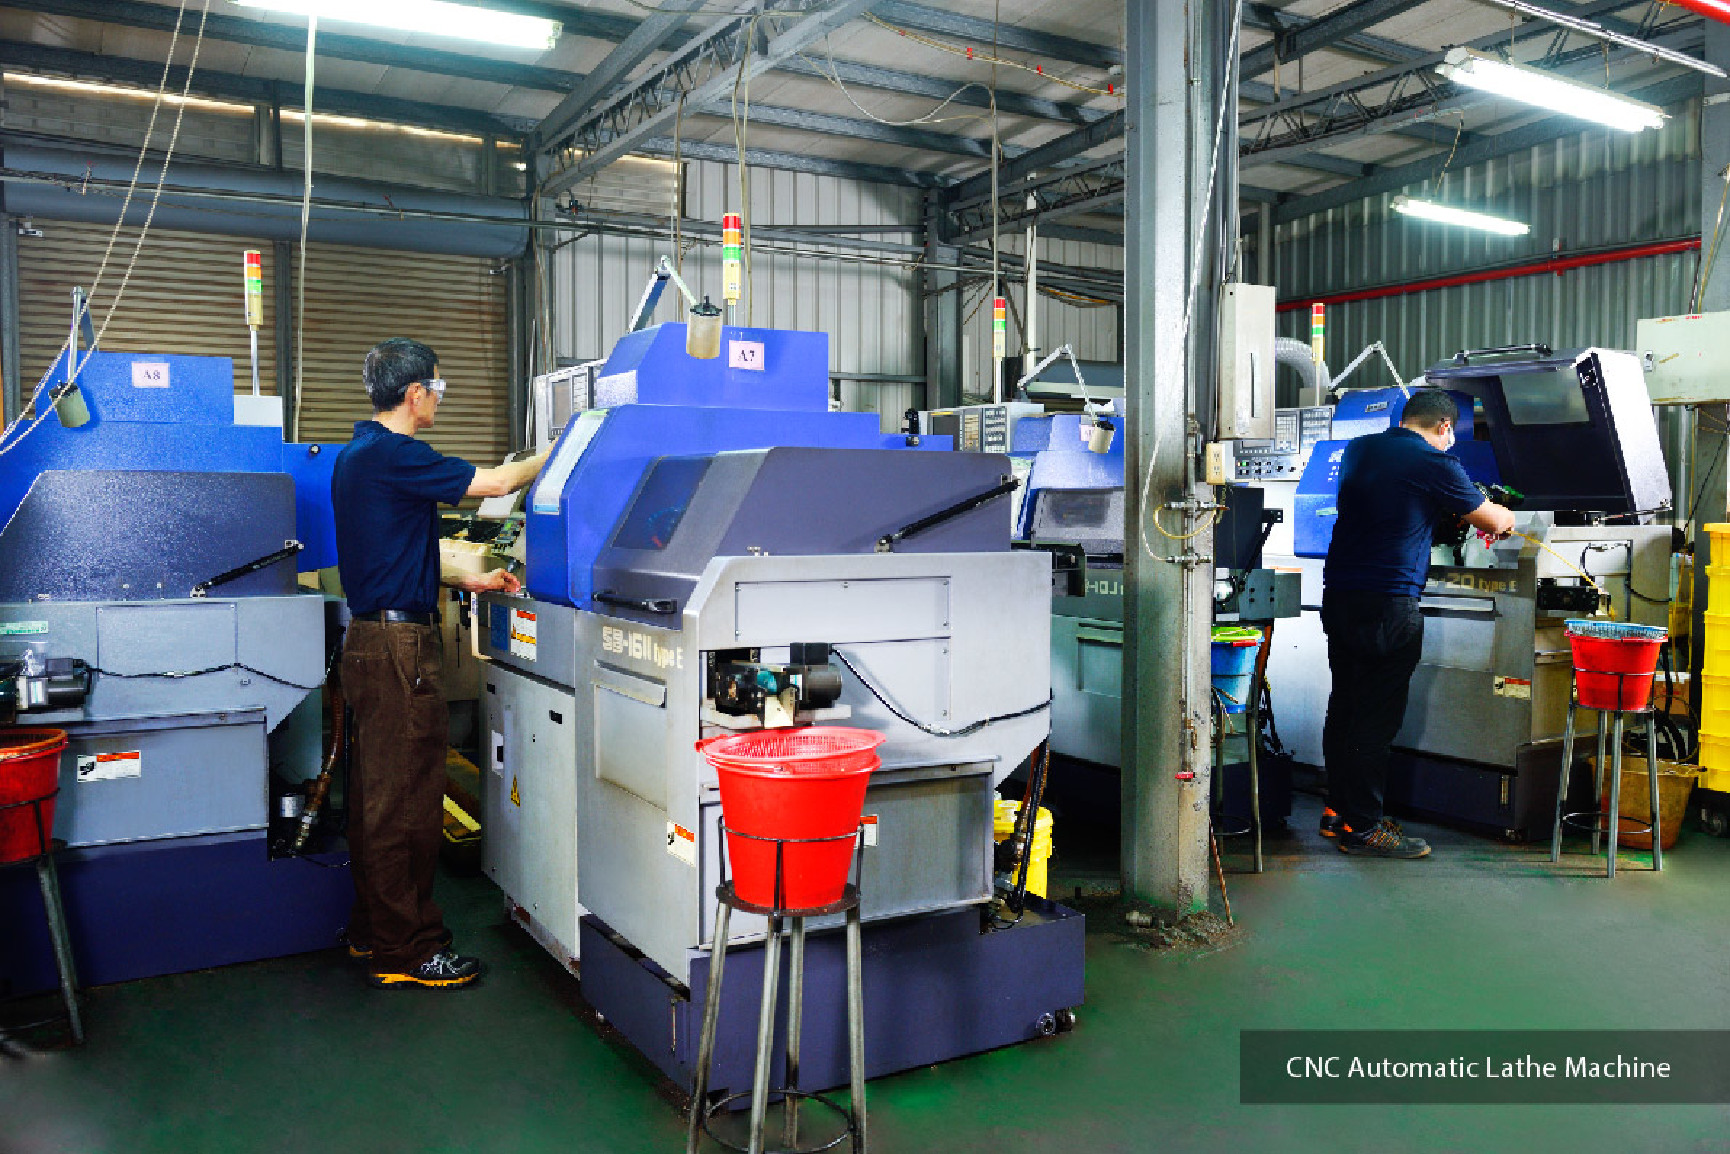 CNC Processing - CNC Automatic Lathe Machine